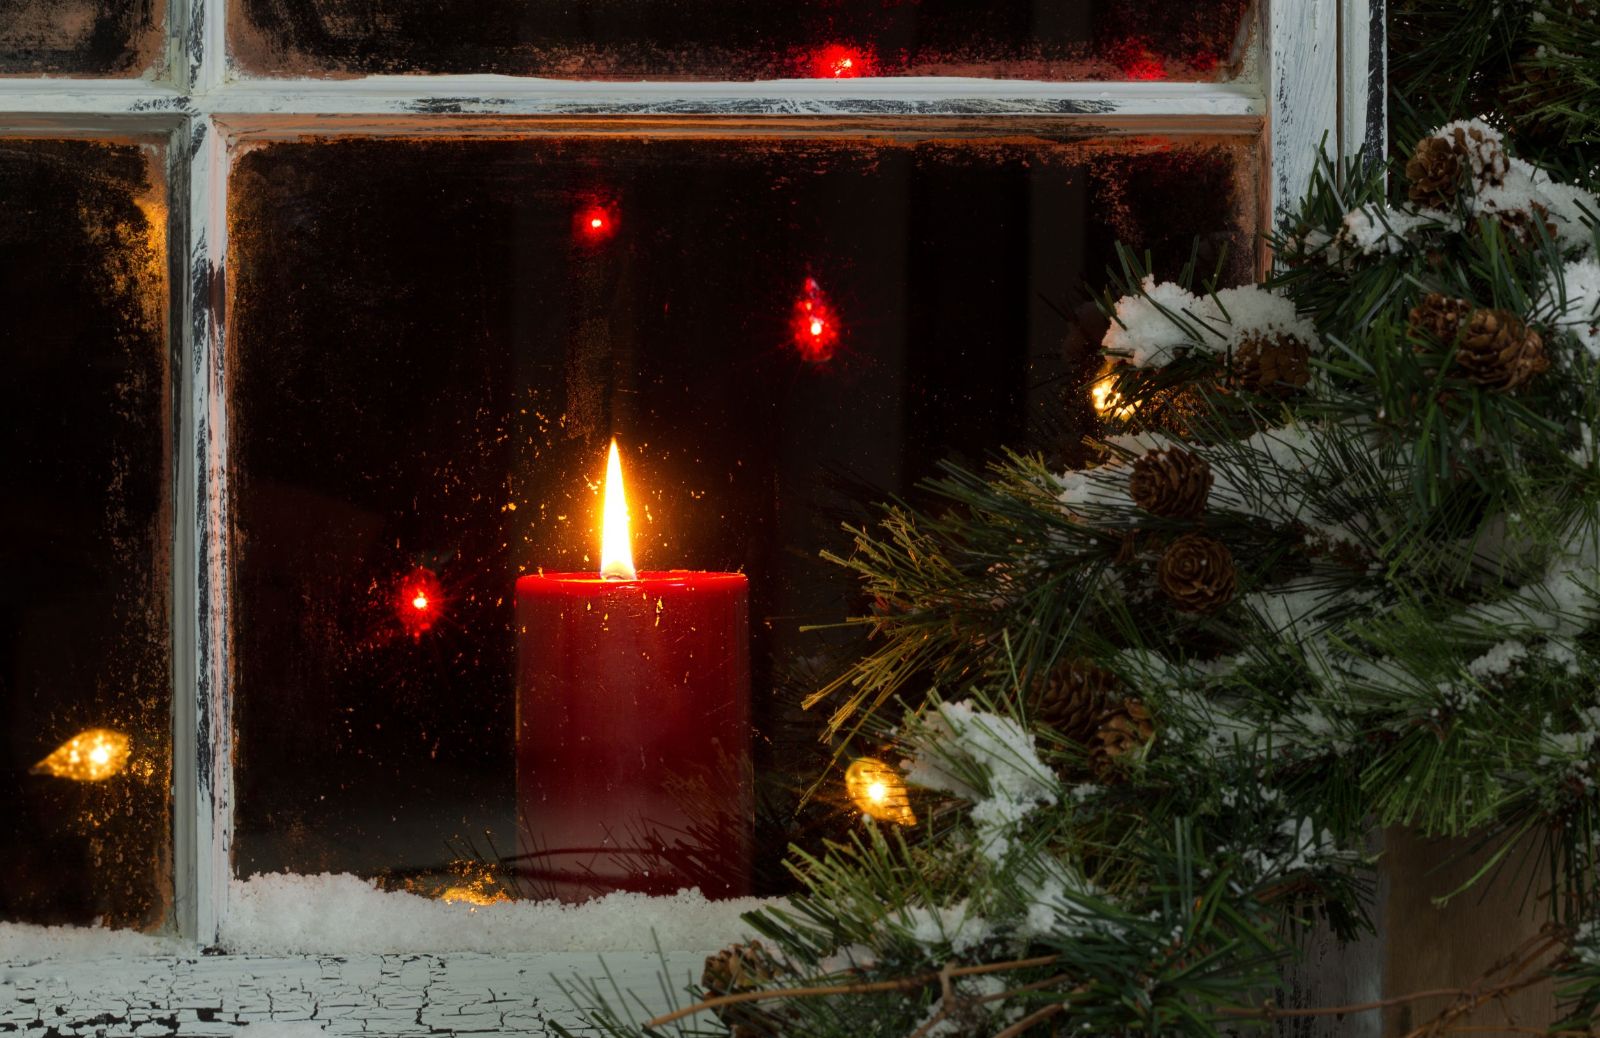 Risparmiare energia a Natale: 5 consigli per festeggiare senza svenarsi